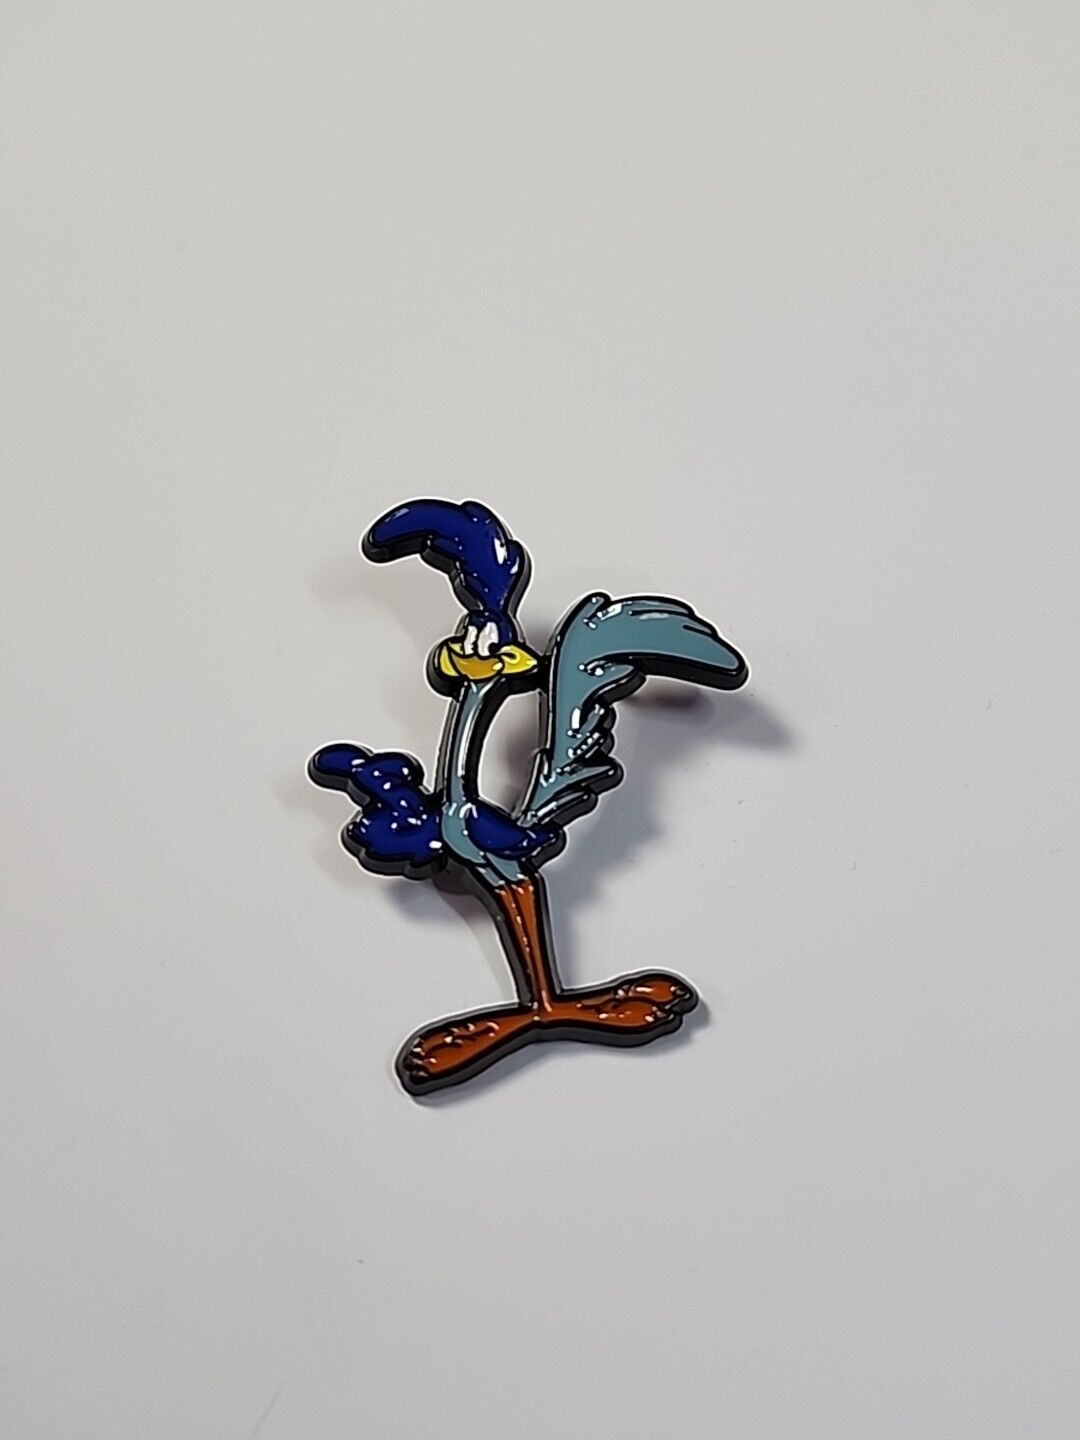 Roadrunner Pin Warner Brothers Cartoon Character Looney Tunes Merrie Melodies